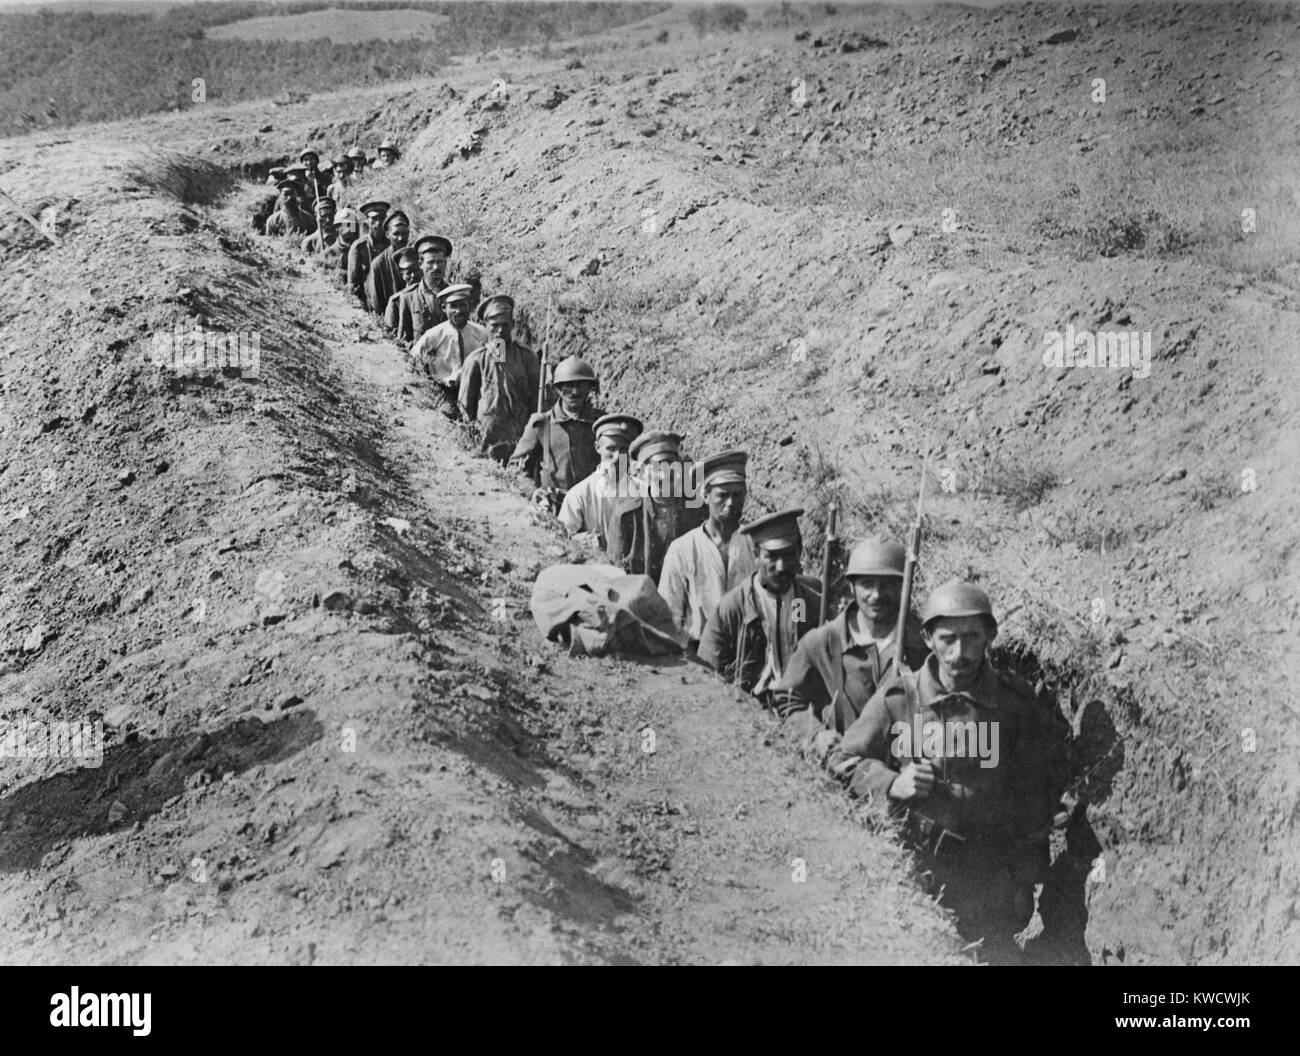 Griechische eskortierenden Soldaten bulgarischen Gefangenen im Jahre 1918 während des Zweiten Weltkriegs 1. Griechenland in den Krieg gegen die Mittelmächte im Jahr 1917. Dieses Bild ist vielleicht der Schlacht von Skra-di-legen, die Griechen besiegte Bulgarische Kräfte, Mai 29-30, 1918 (BSLOC 2017 1 146) Stockfoto